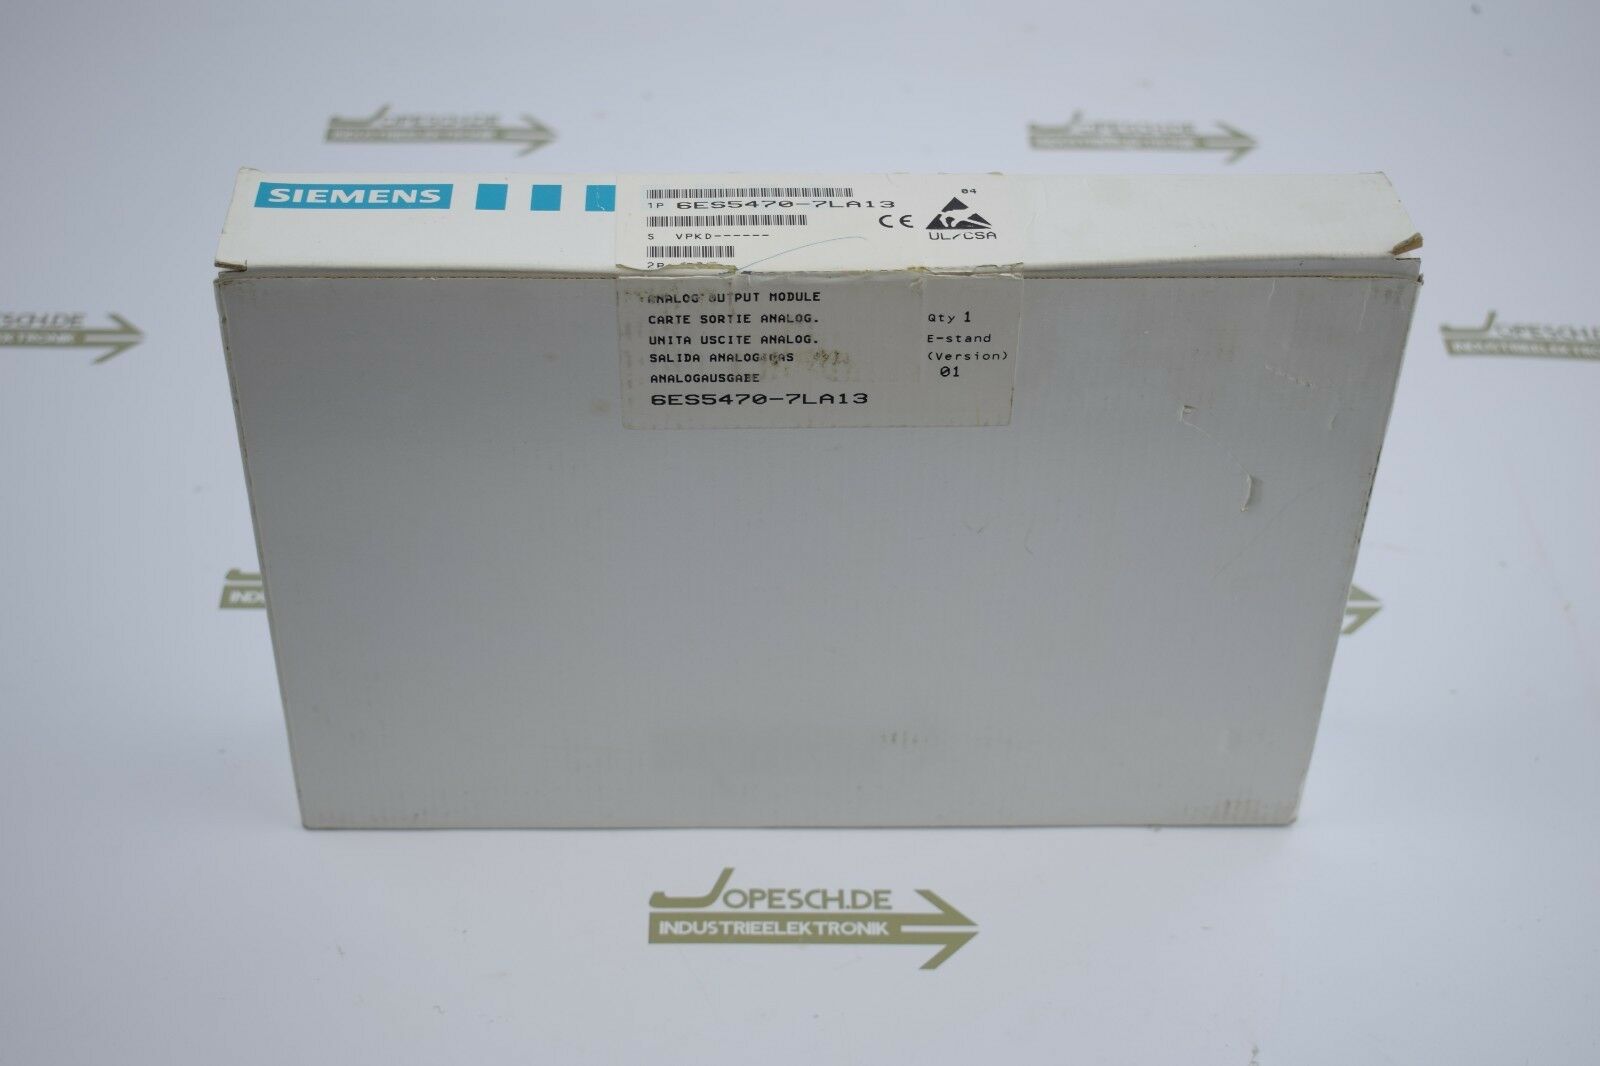 Siemens simatic S5 6ES5 470-7LA13 ( 6ES5470-7LA13 ) E1